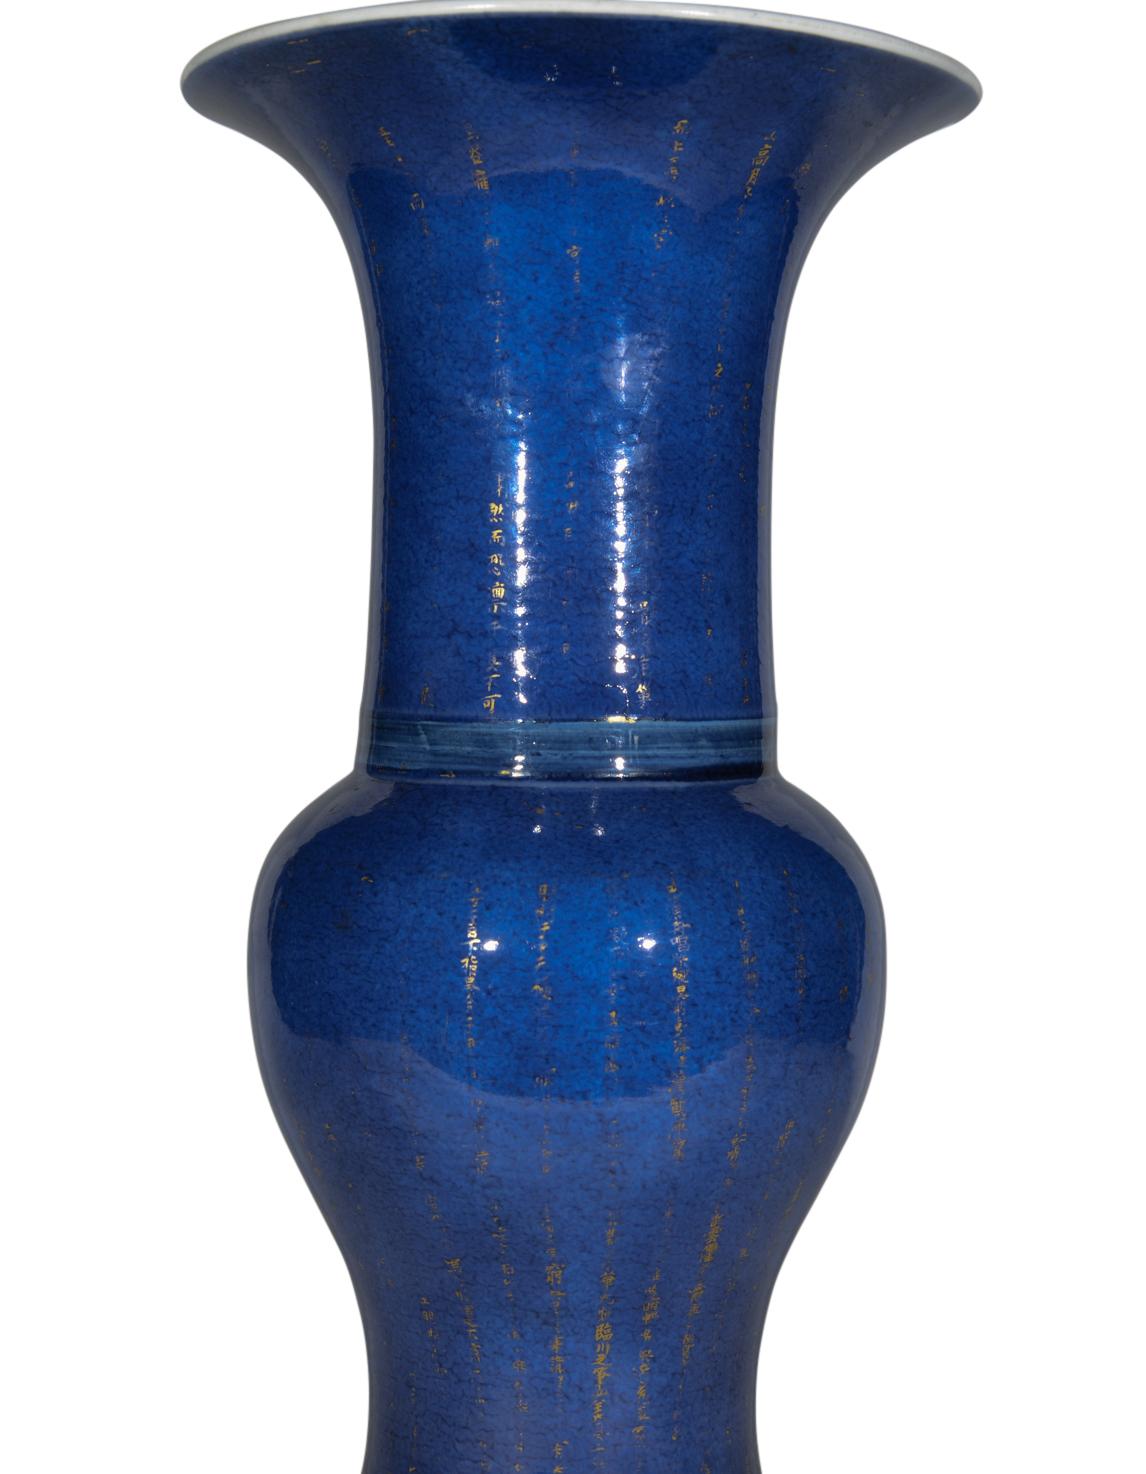 Très beau vase balustre de la fin du XIXe siècle en glaçure bleue profondément tachetée, à col évasé, décoré de dorures frottées et d'inscriptions chinoises. Elle est aujourd'hui montée comme une lampe avec une base tournée et dorée à la